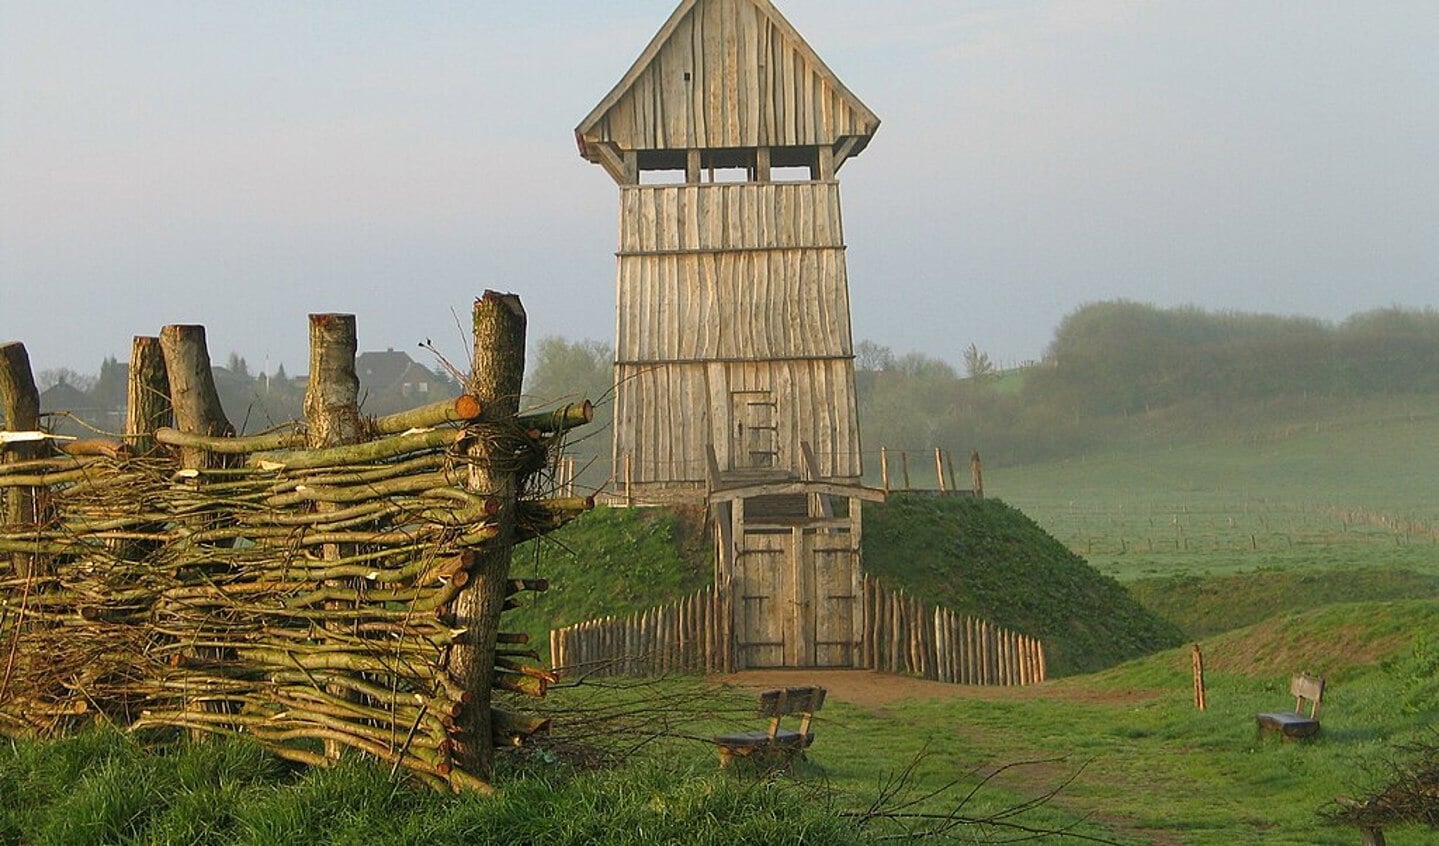 Voorbeeld van een motteburcht. Een hoger gelegen gedeelte met daarop een houten toren en op het lagere deel een boerderij of kleine woongemeenschap.